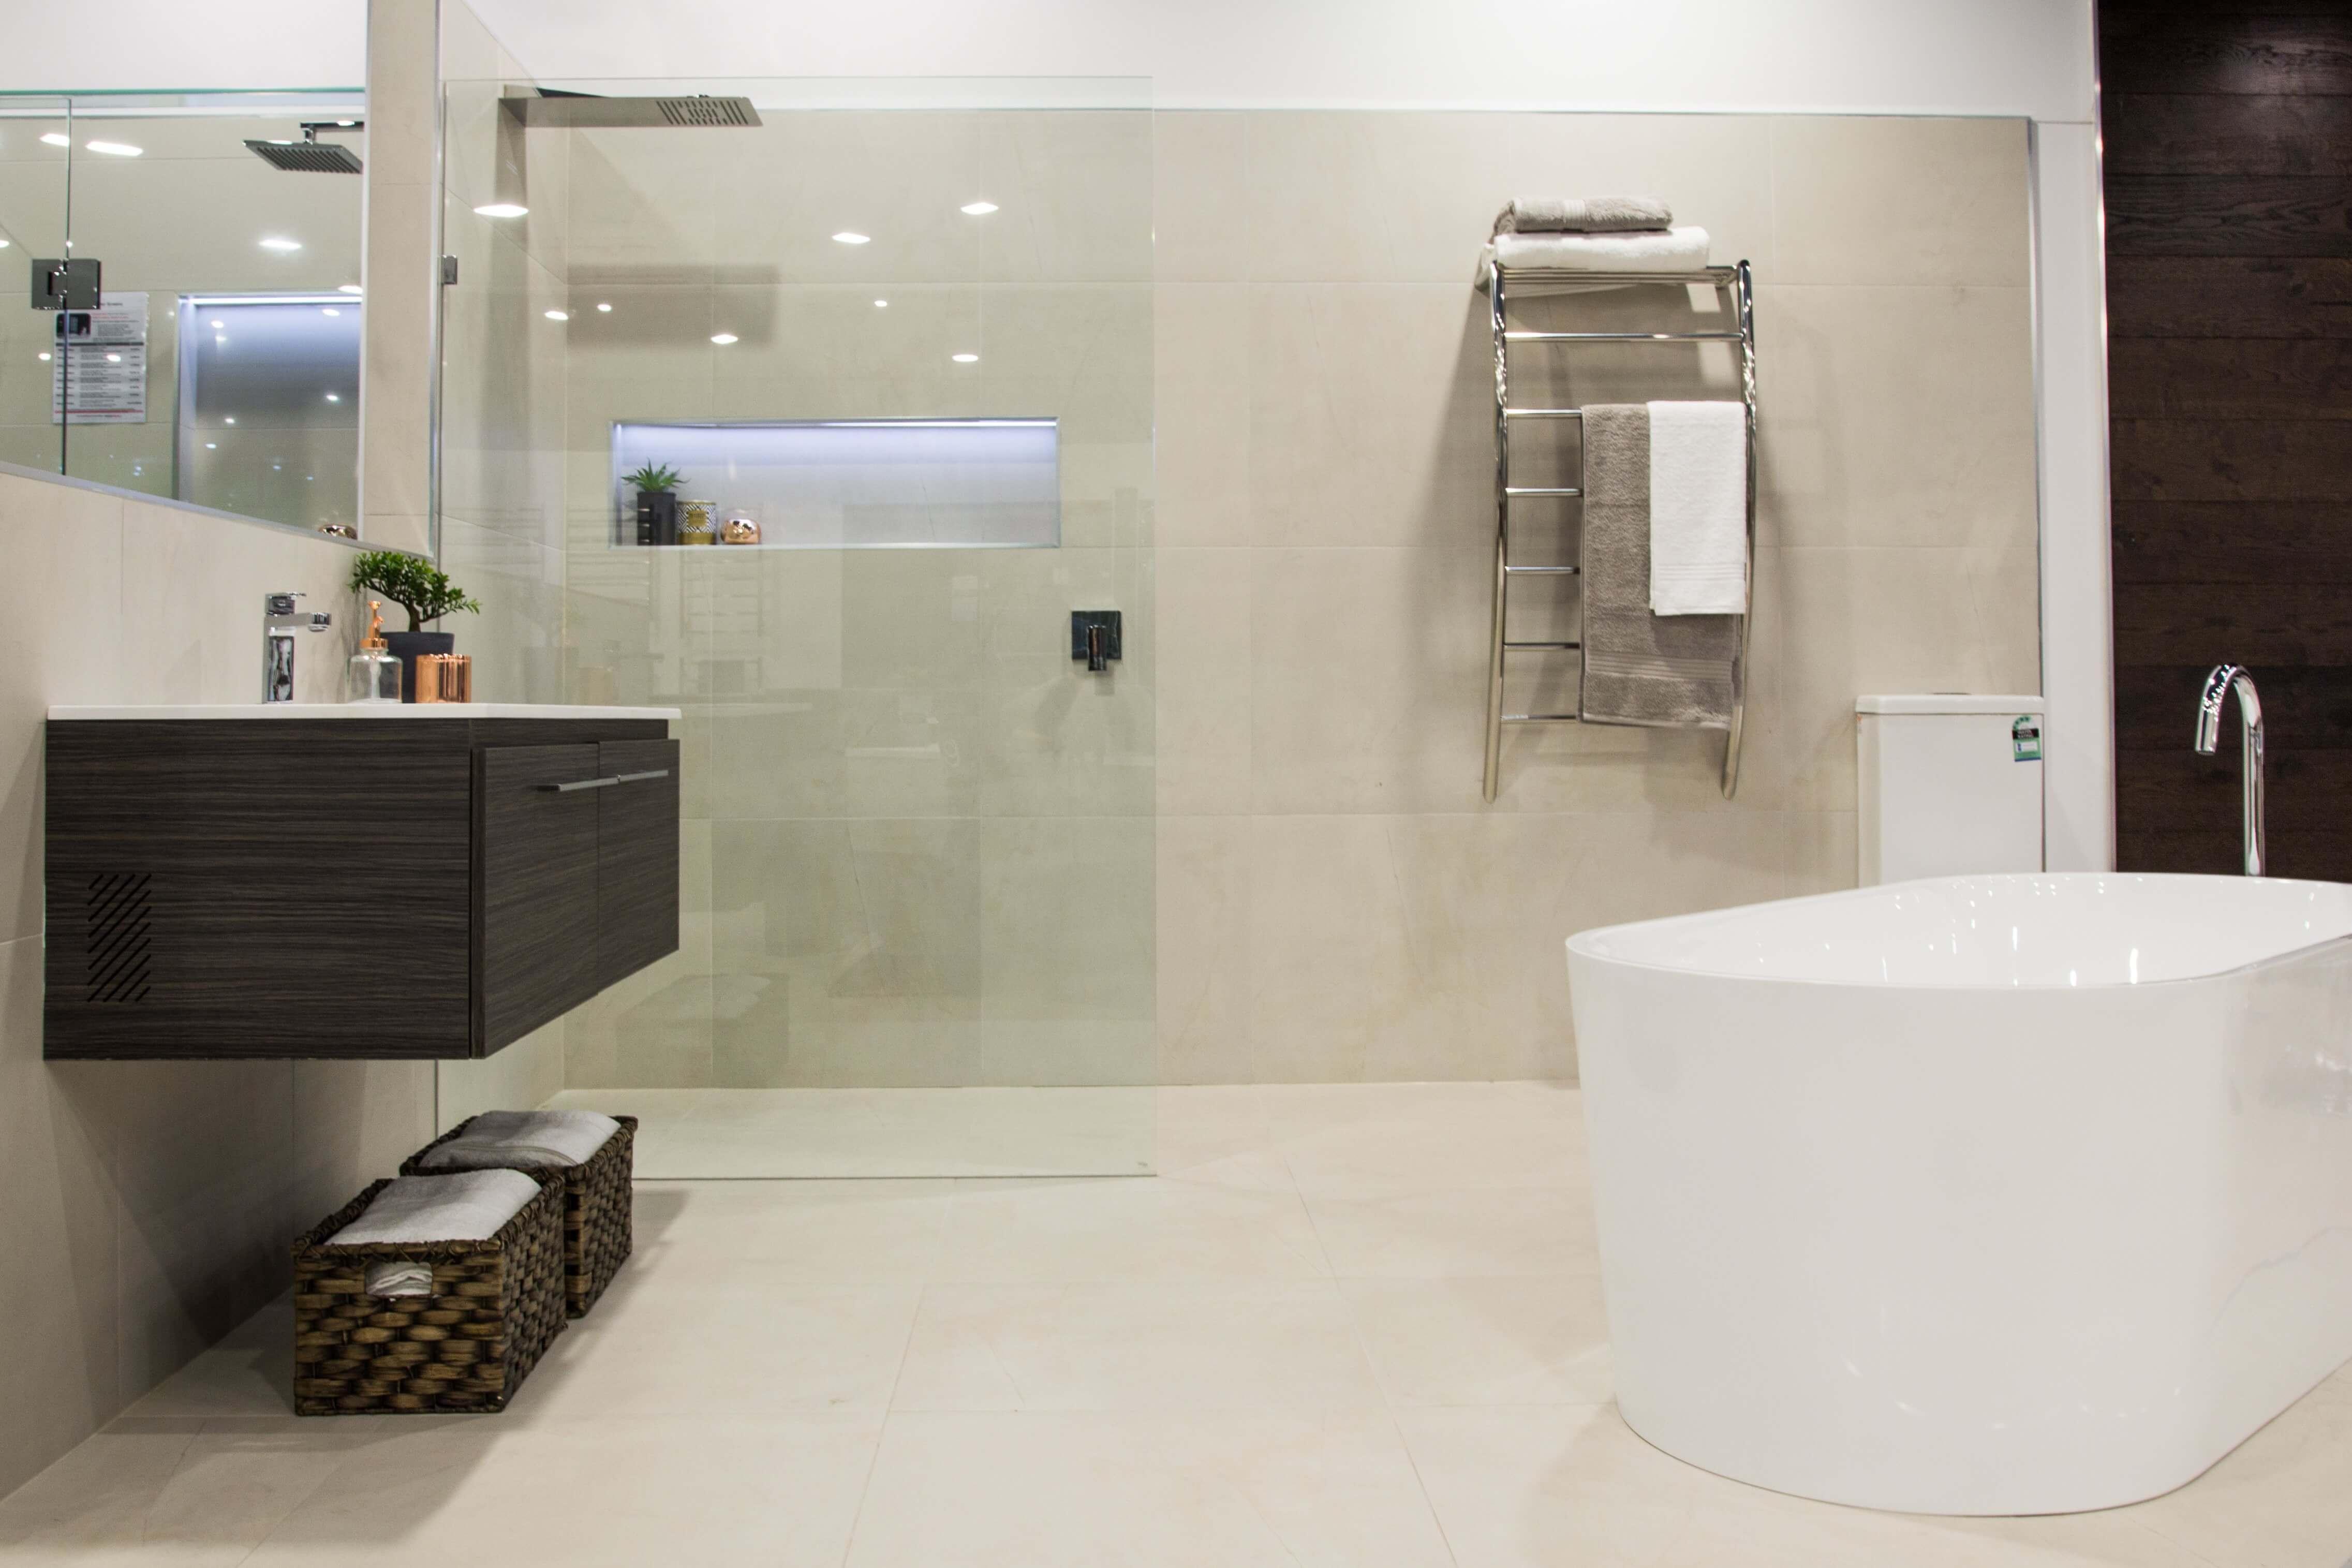 Buy New Bathroom Vanities Melbourne | Bathroom Vanities ...